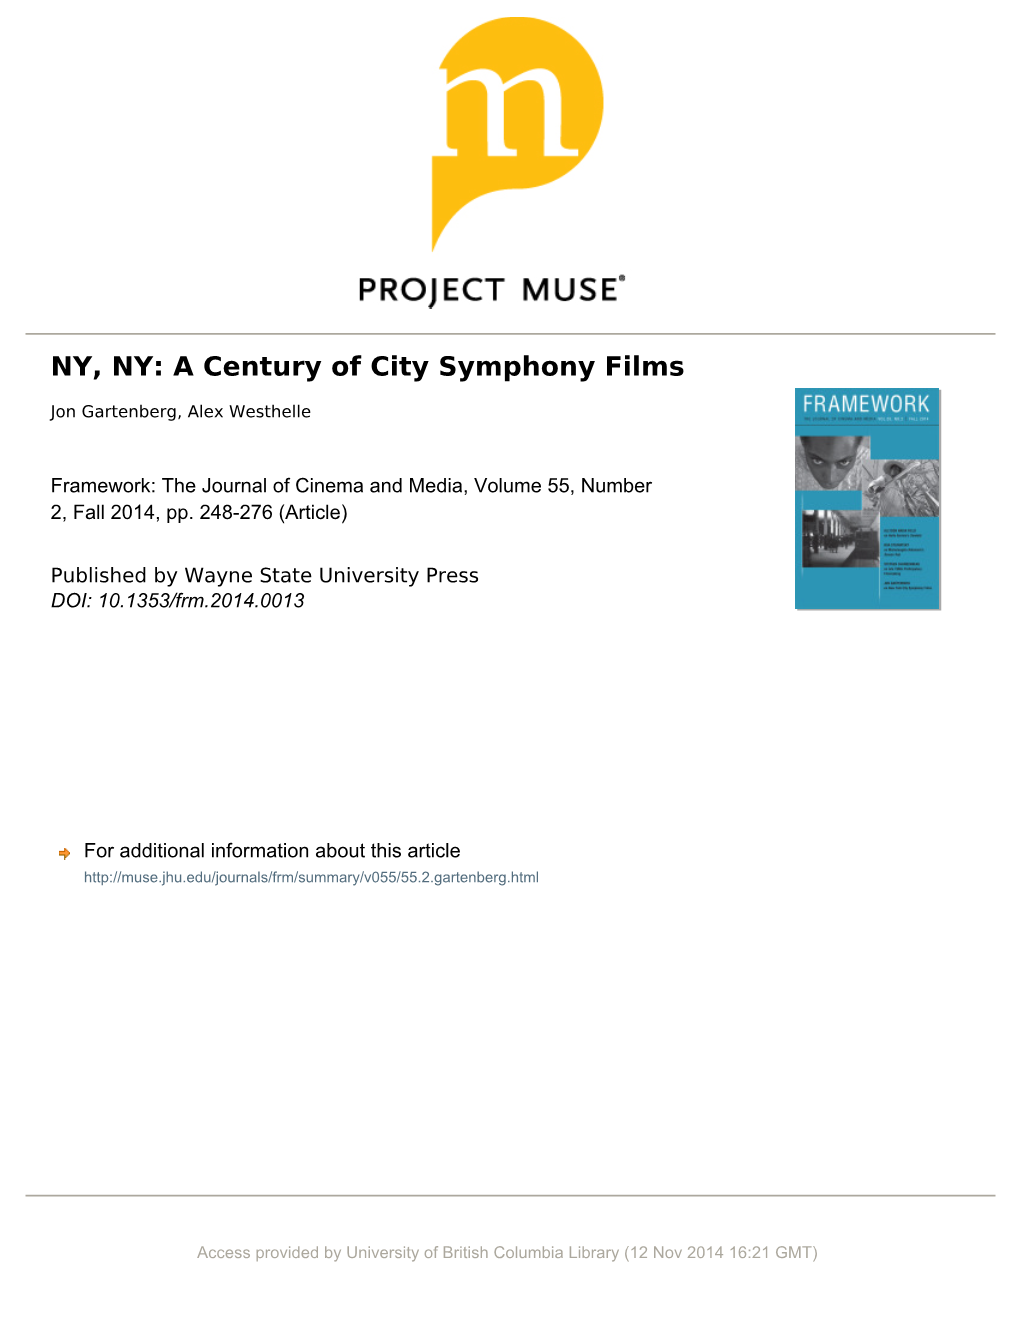 NY, NY: a Century of City Symphony Films